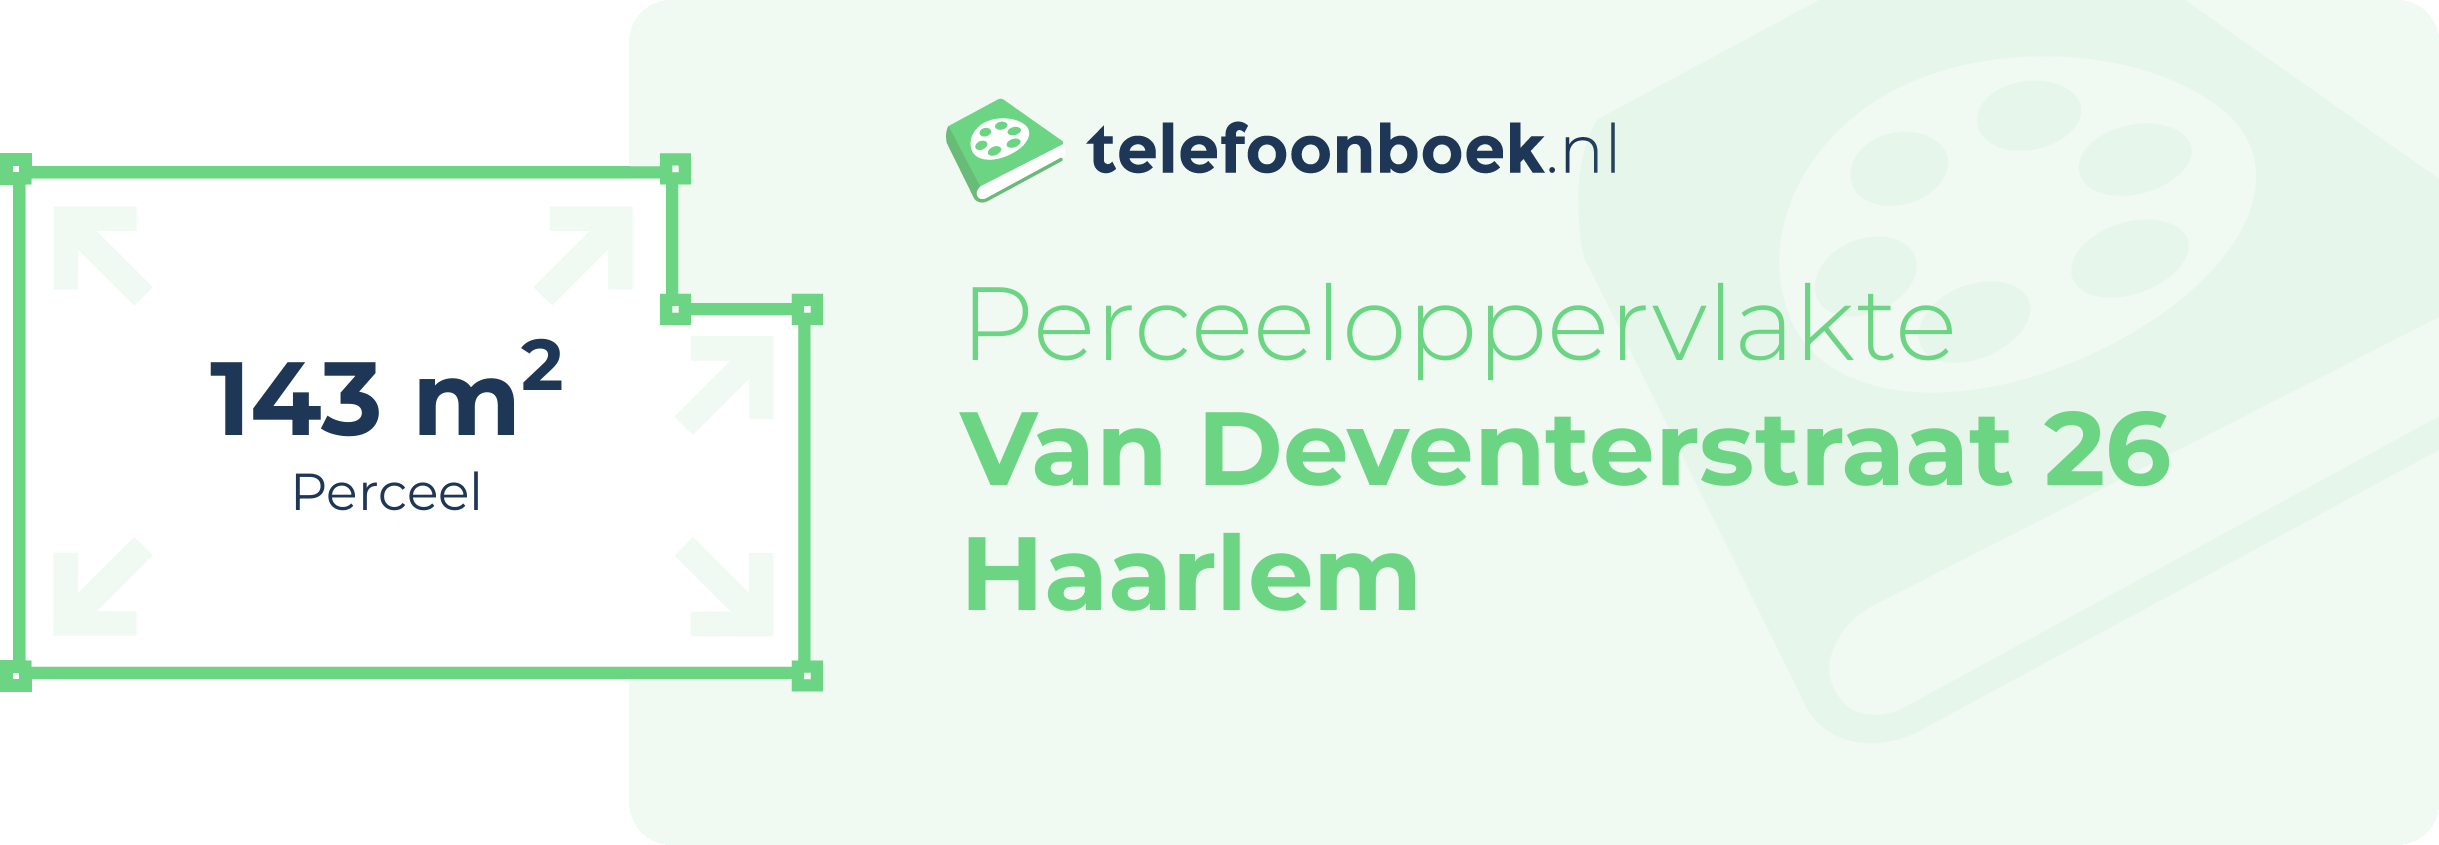 Perceeloppervlakte Van Deventerstraat 26 Haarlem